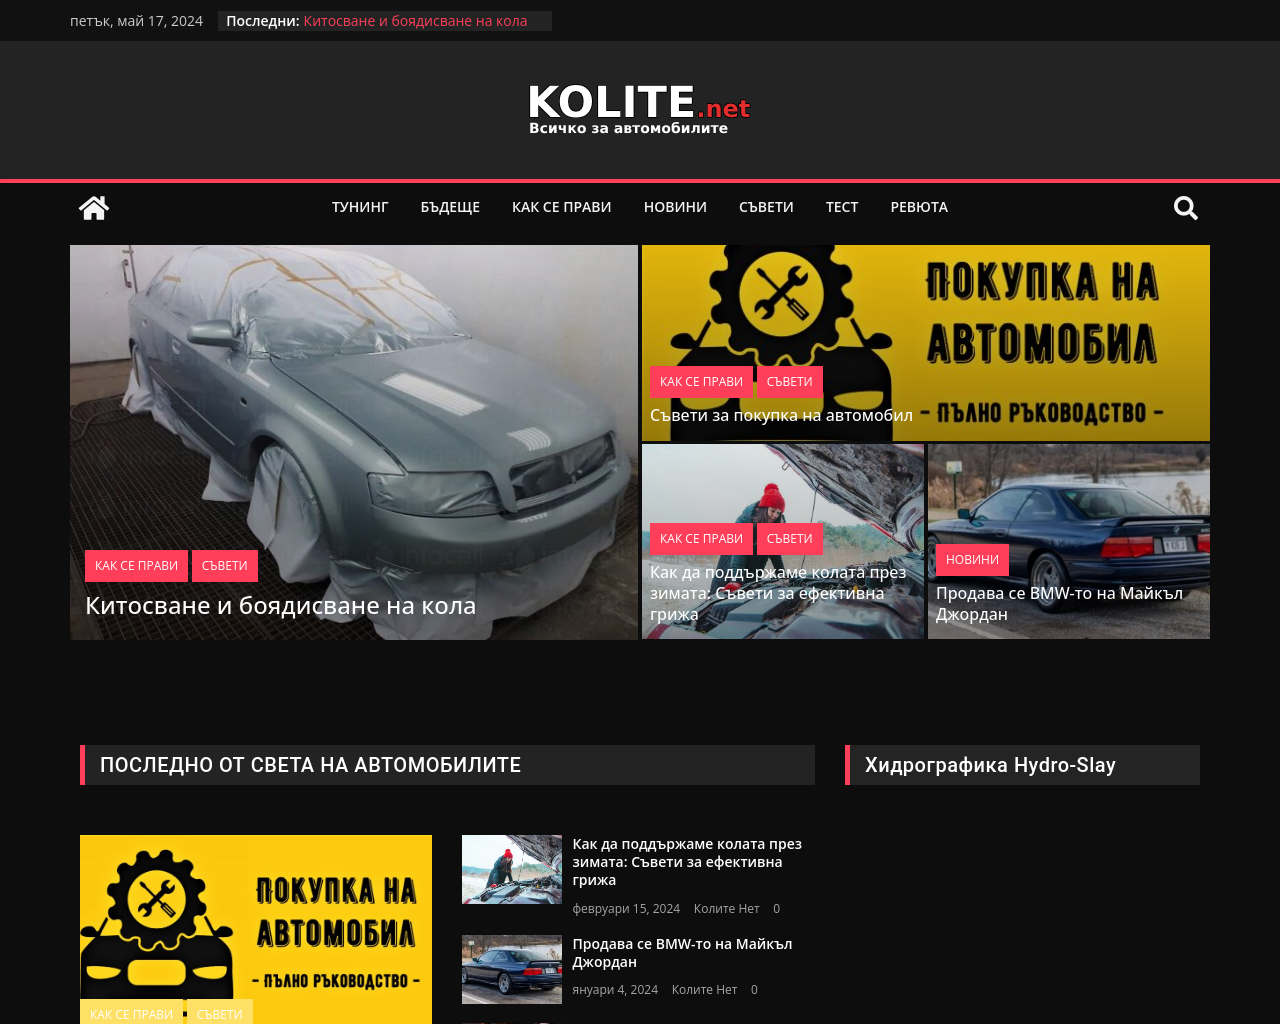 kolite.net